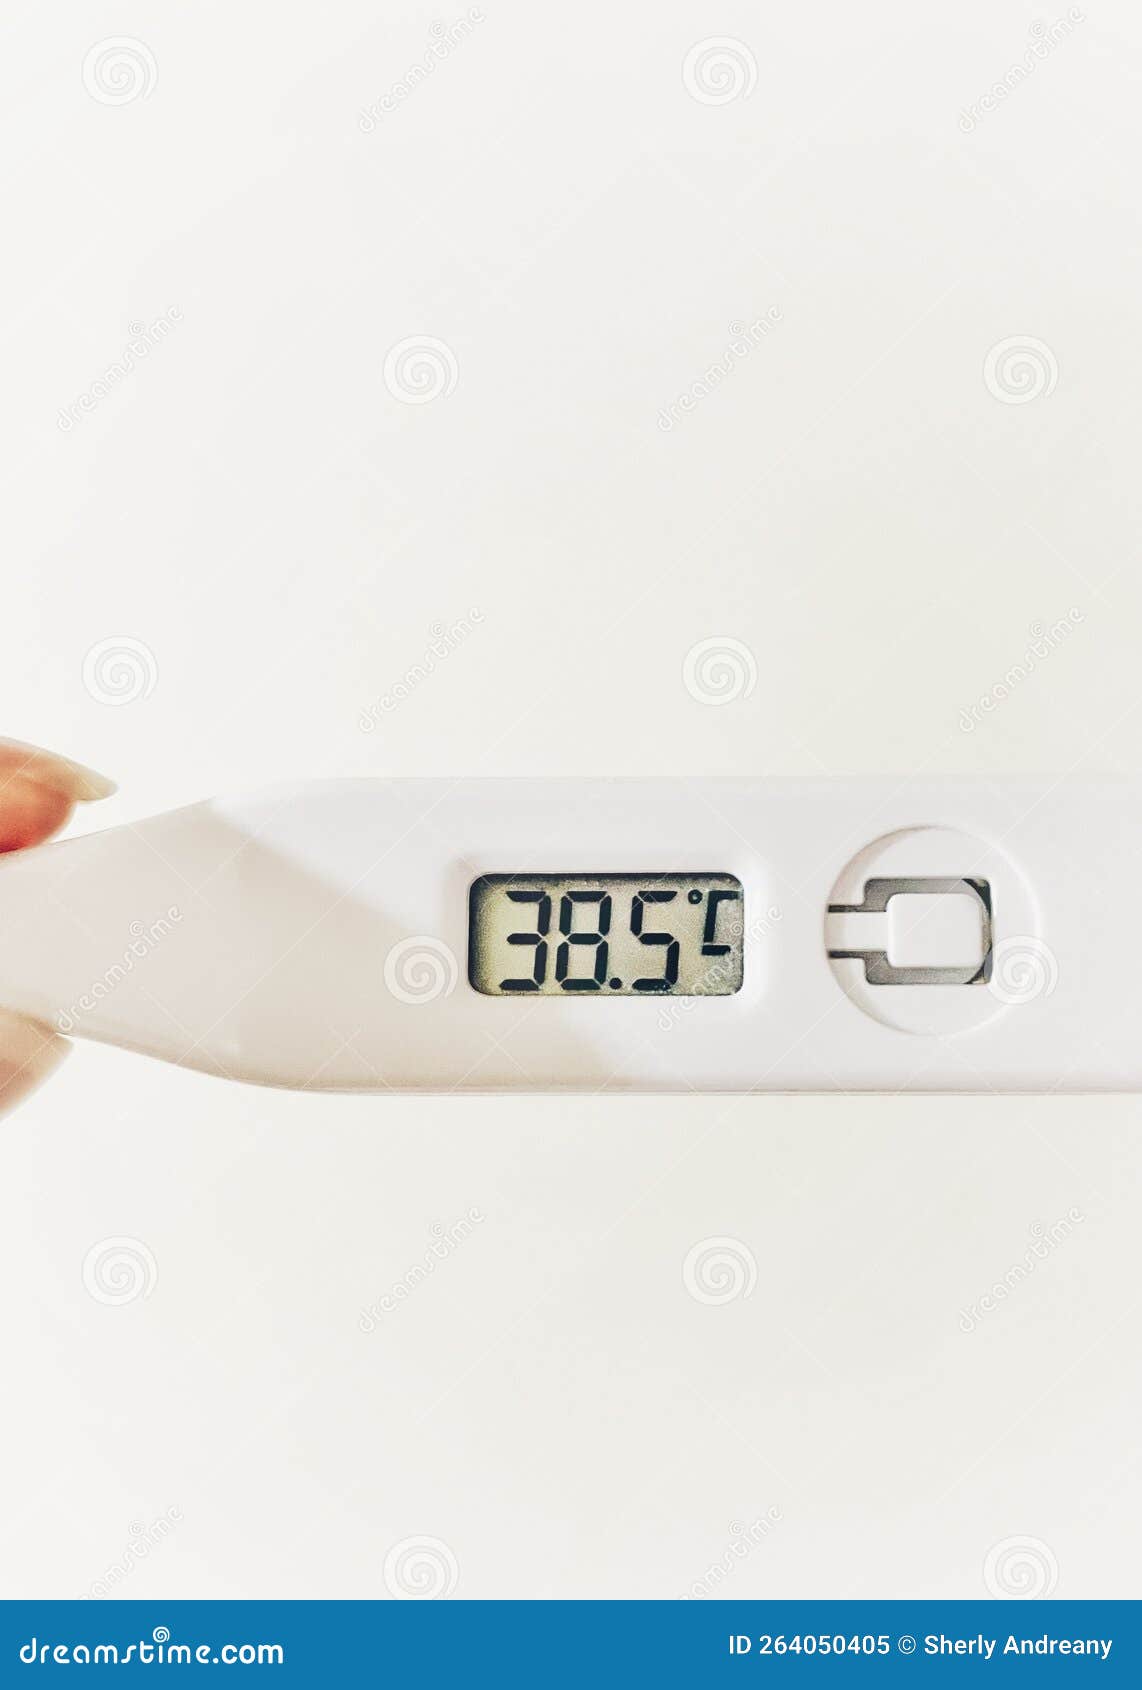 fever 38.5 degrees celcius